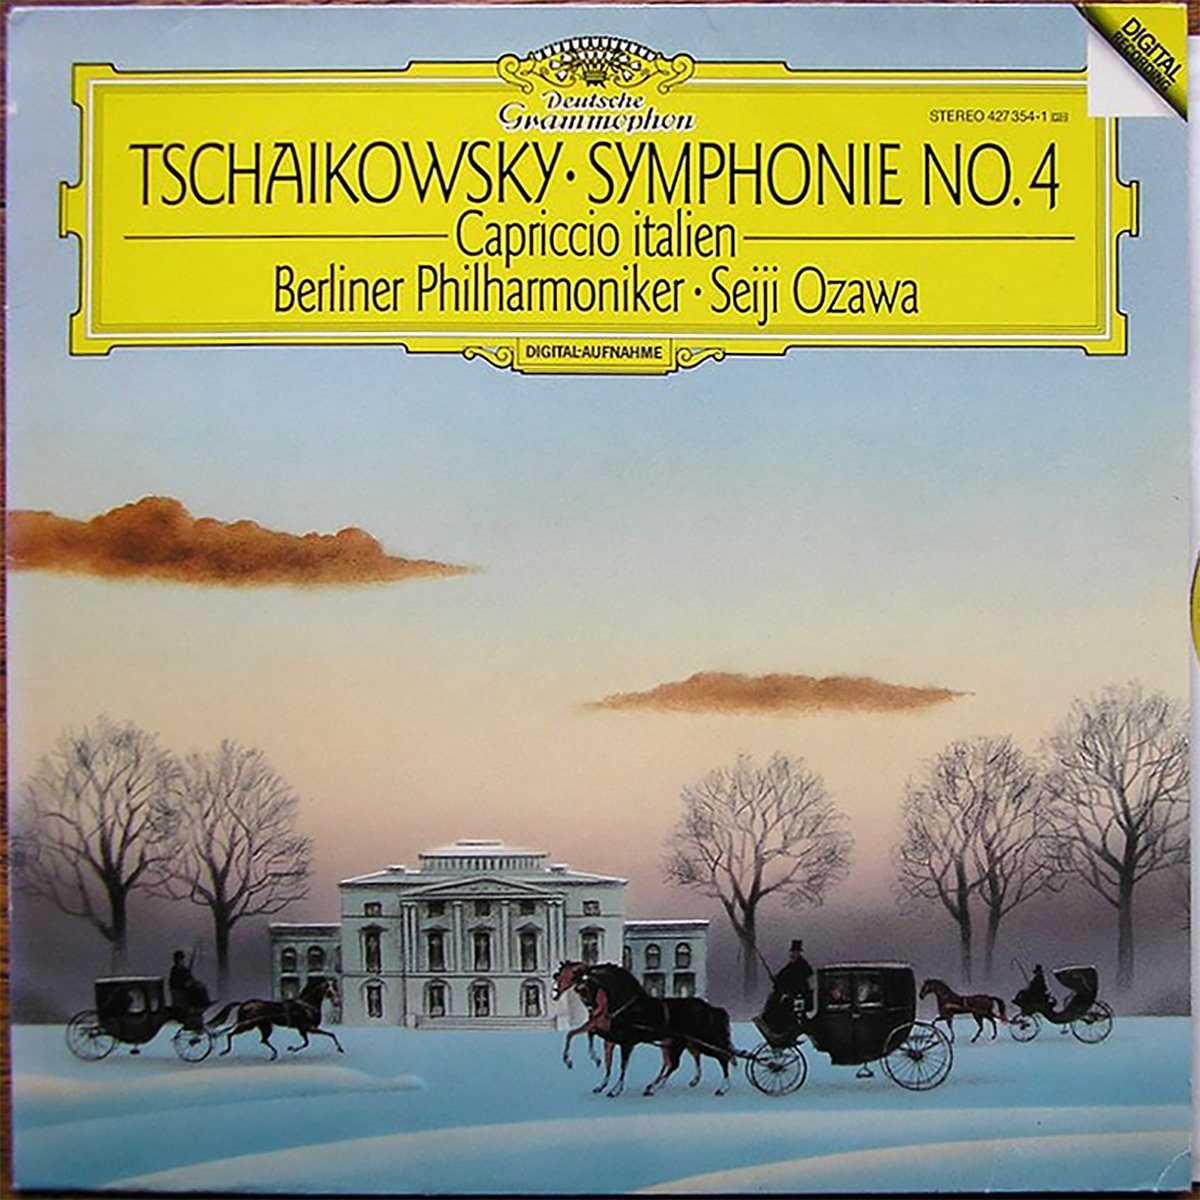 DGG 427 354 Tchaikovsky Symphonie 4 Capriccio Ozawa DGG Digital Aufnahme